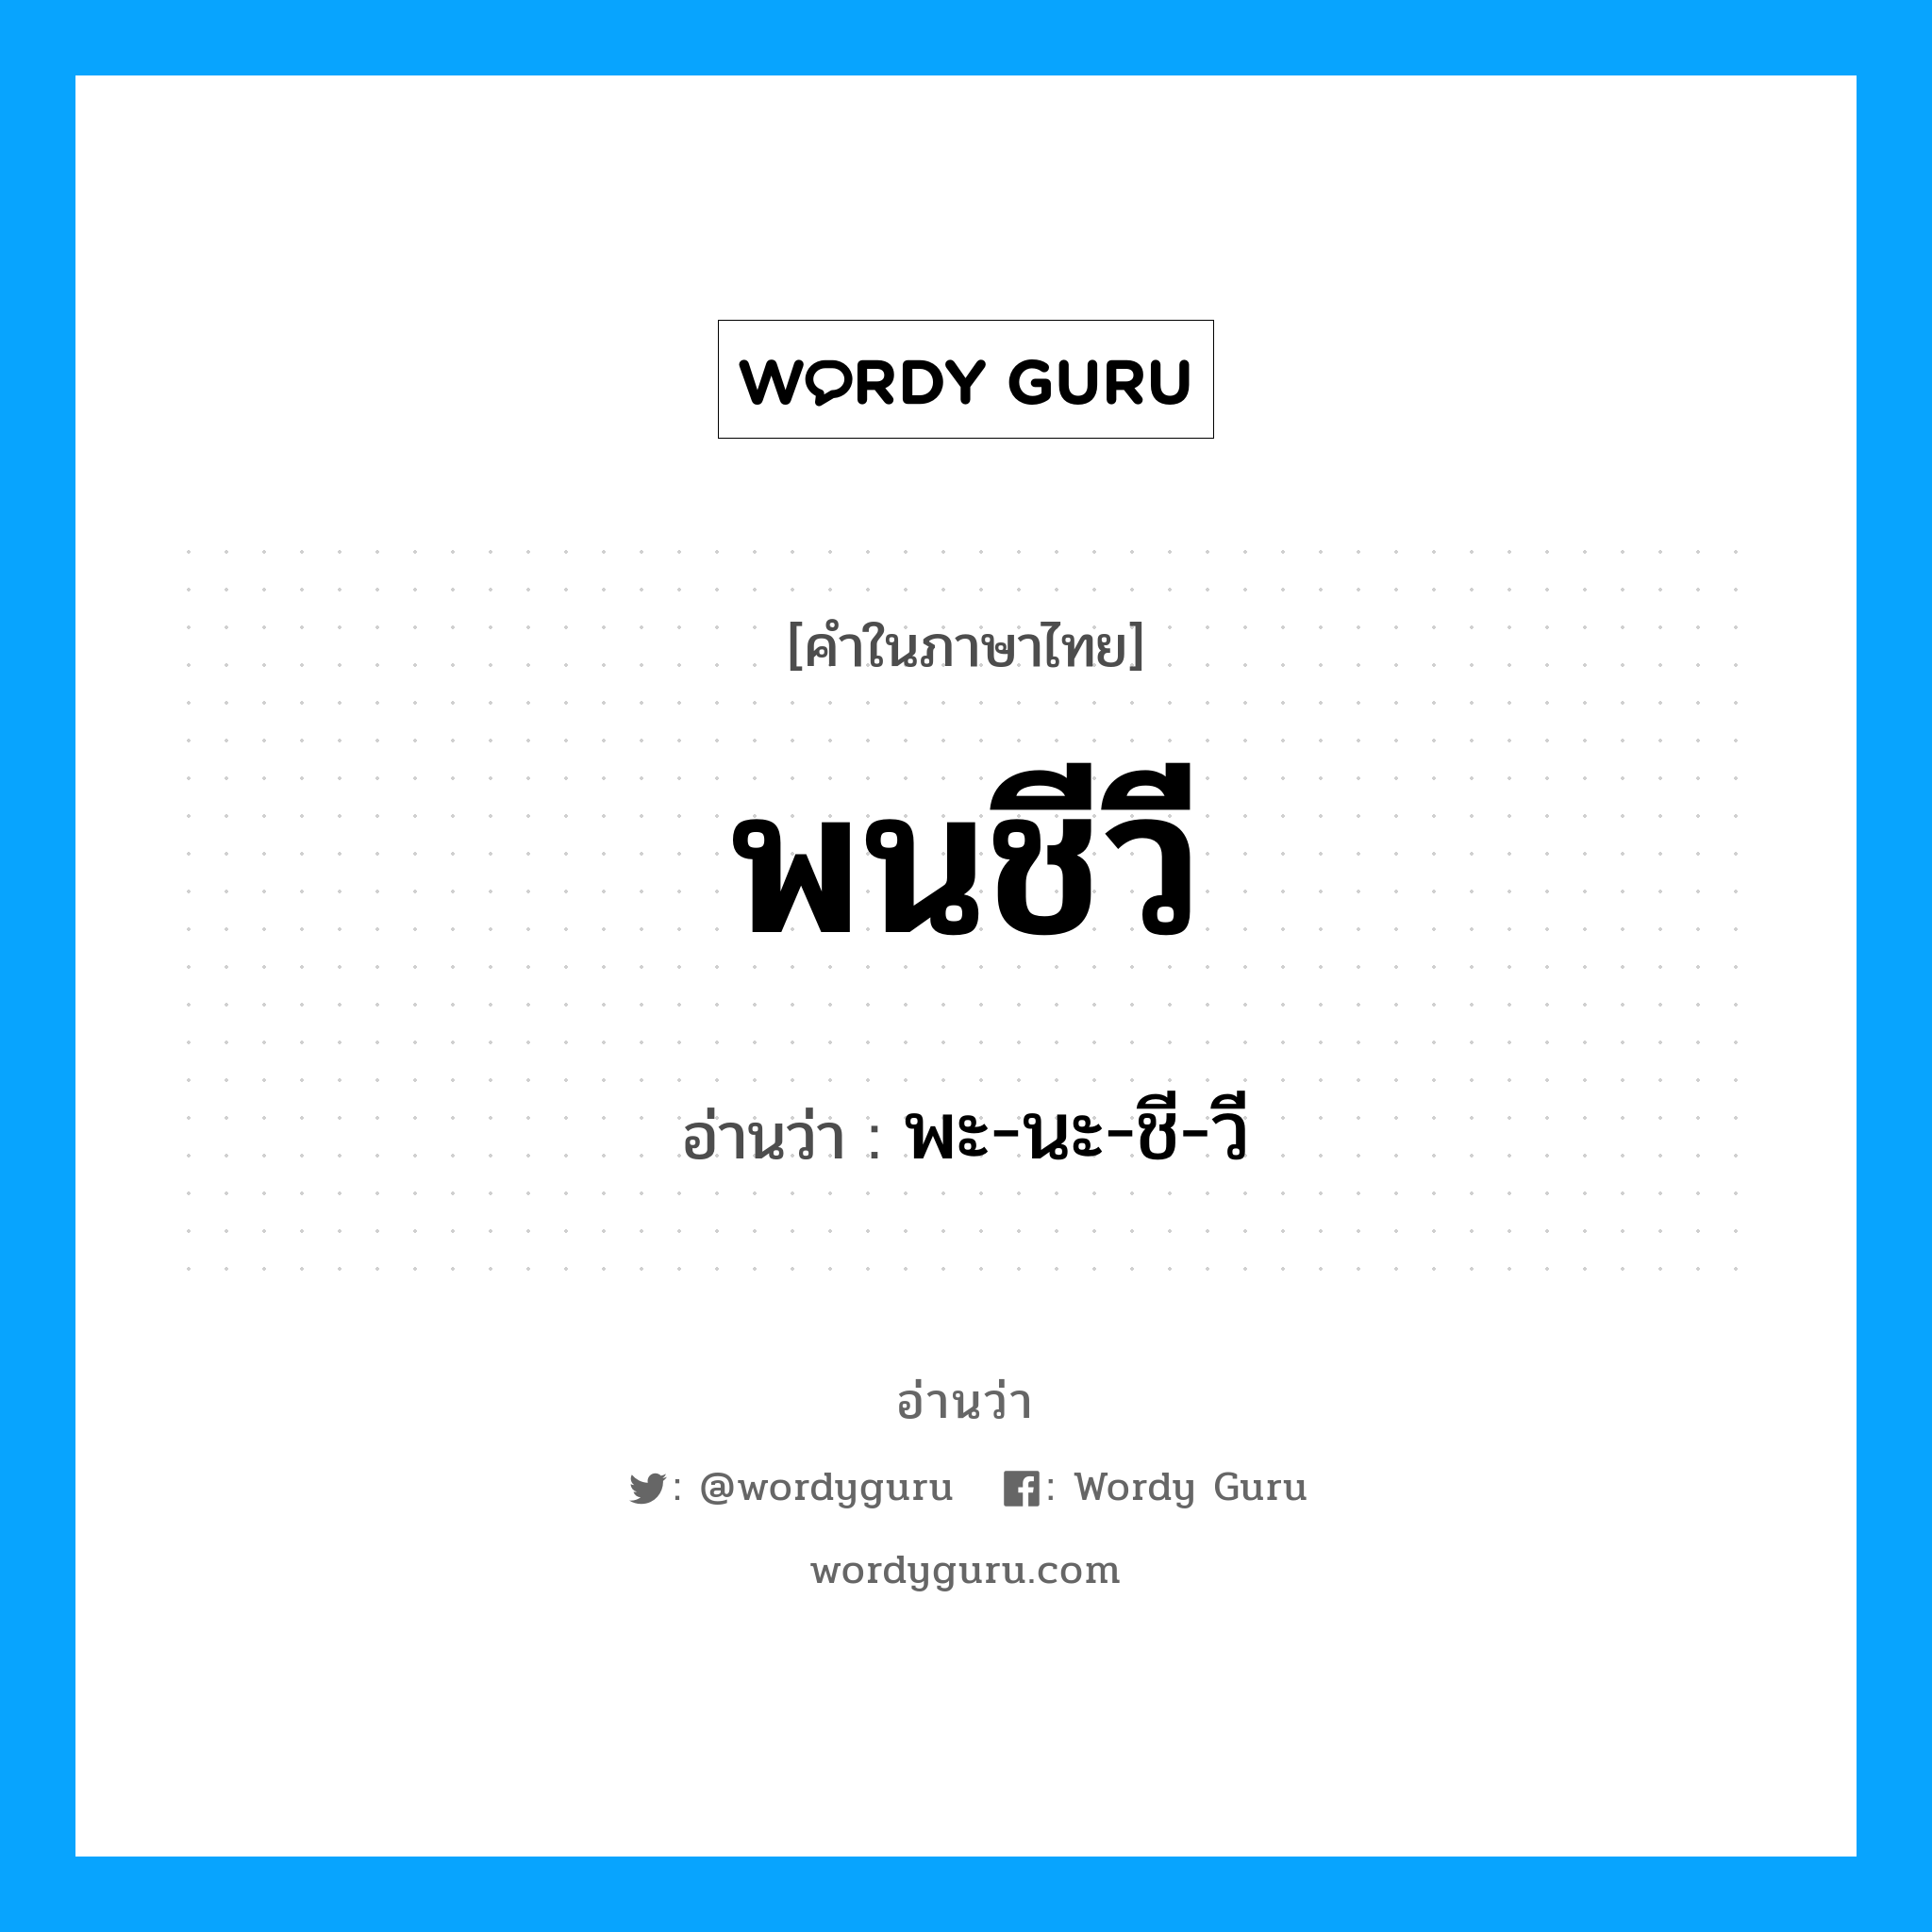 พะ-นะ-ชี-วี เป็นคำอ่านของคำไหน?, คำในภาษาไทย พะ-นะ-ชี-วี อ่านว่า พนชีวี